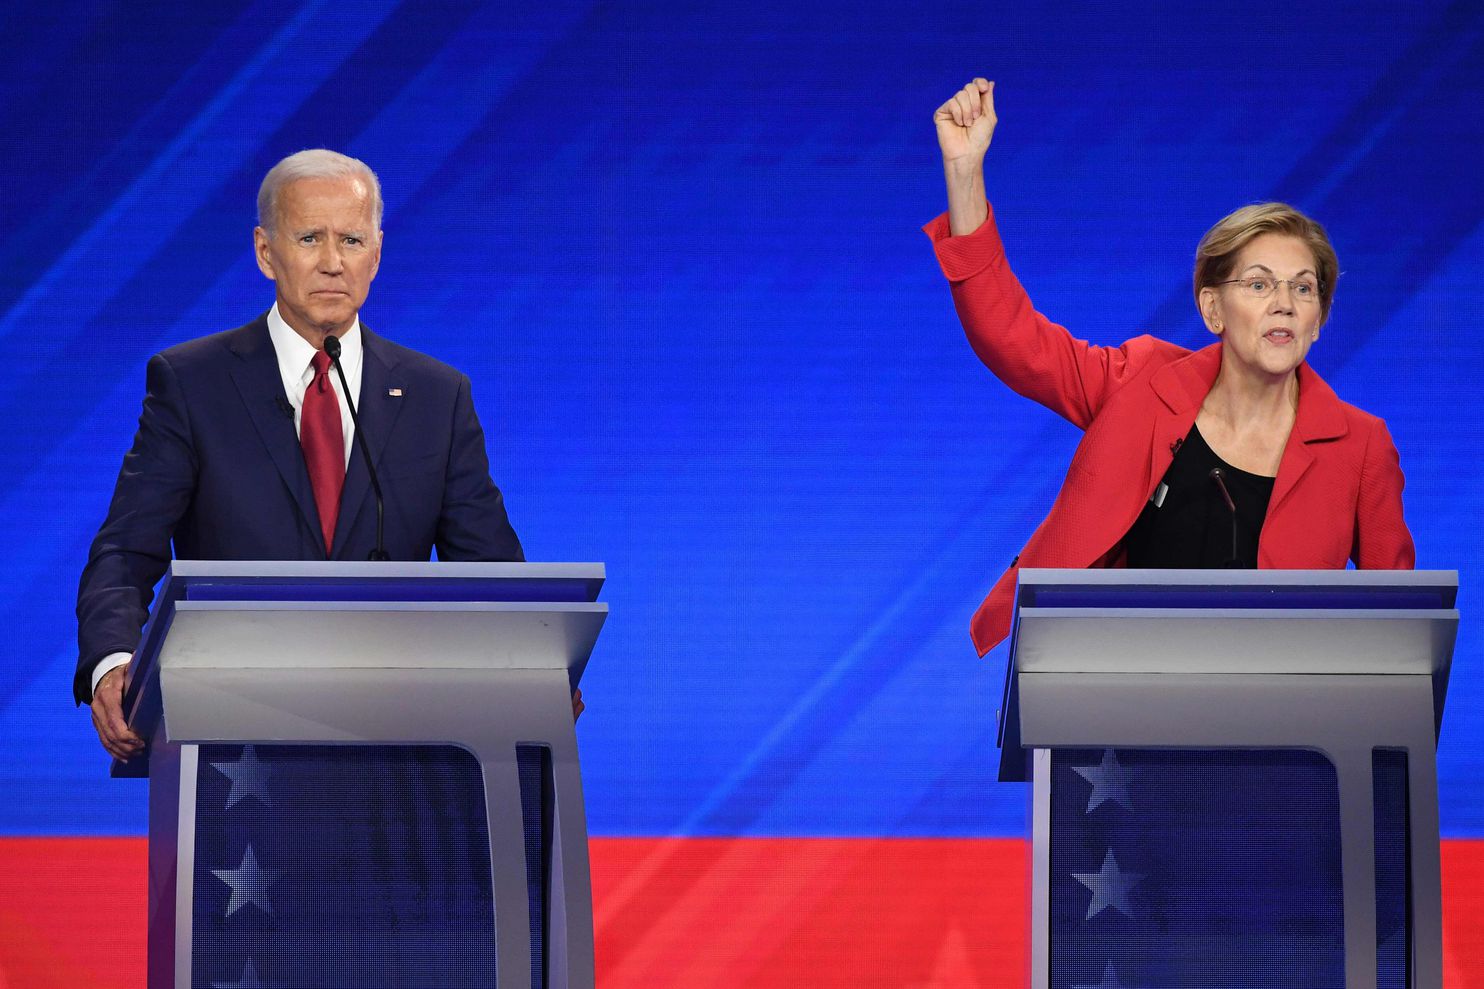 Democratic Nominees Joe Biden and Elizabeth Warren